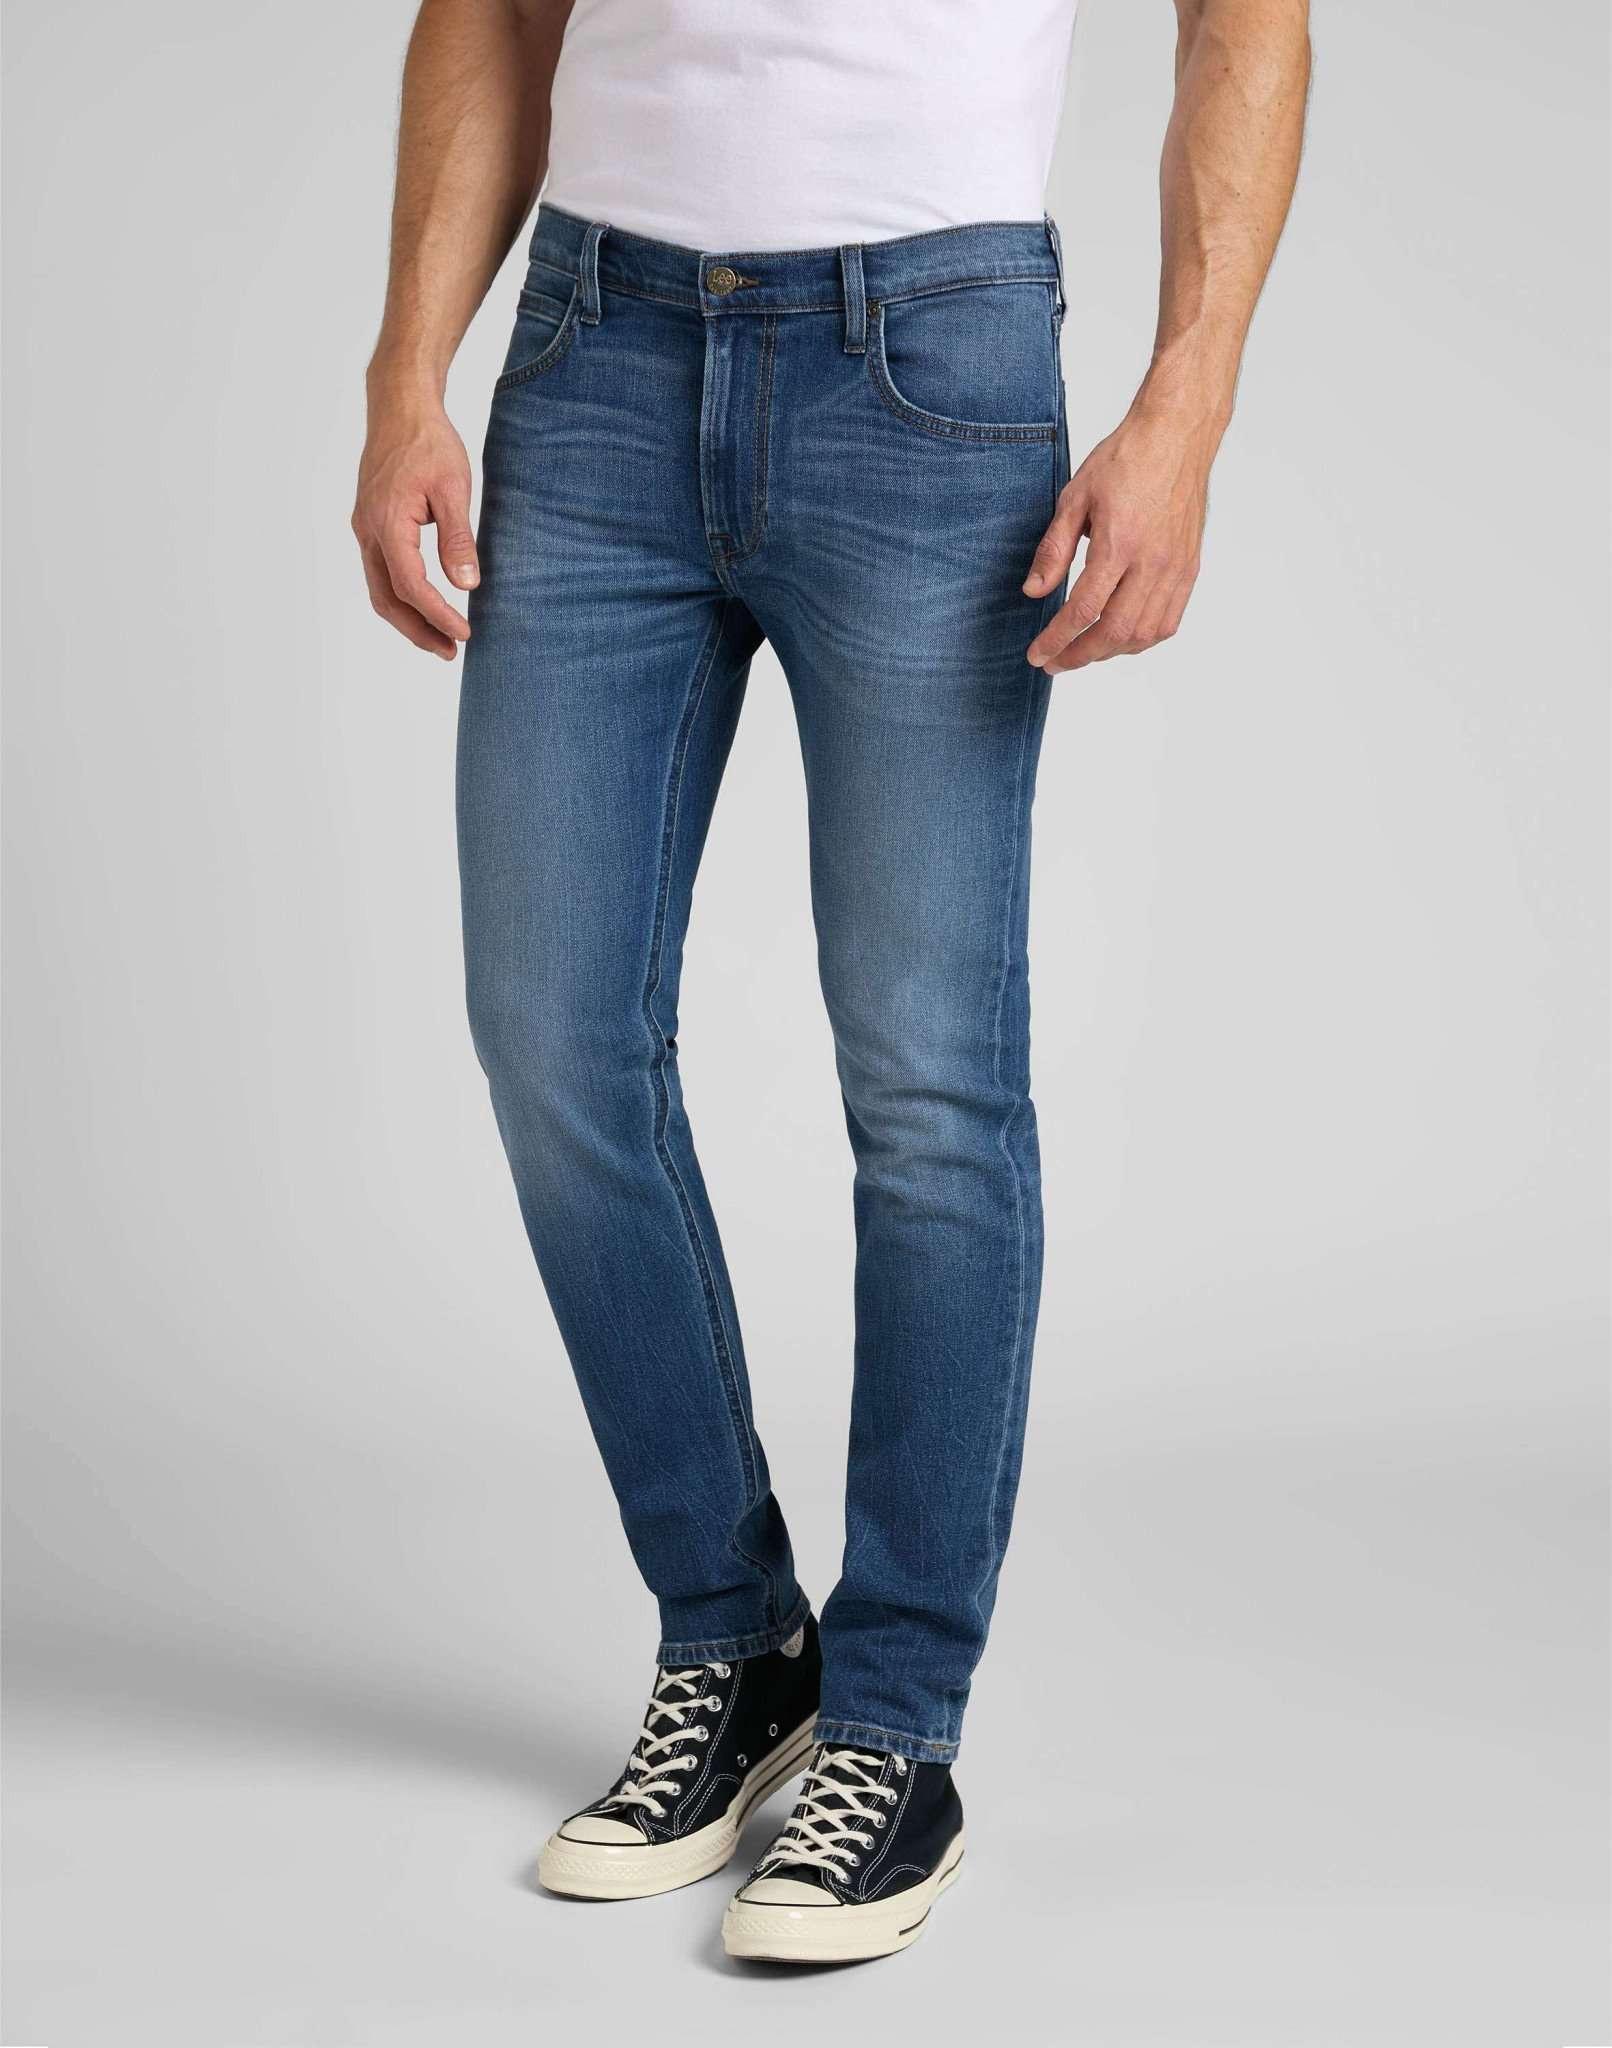 Jeans Slim Fit Luke Herren Blau Denim L34/W30 von Lee